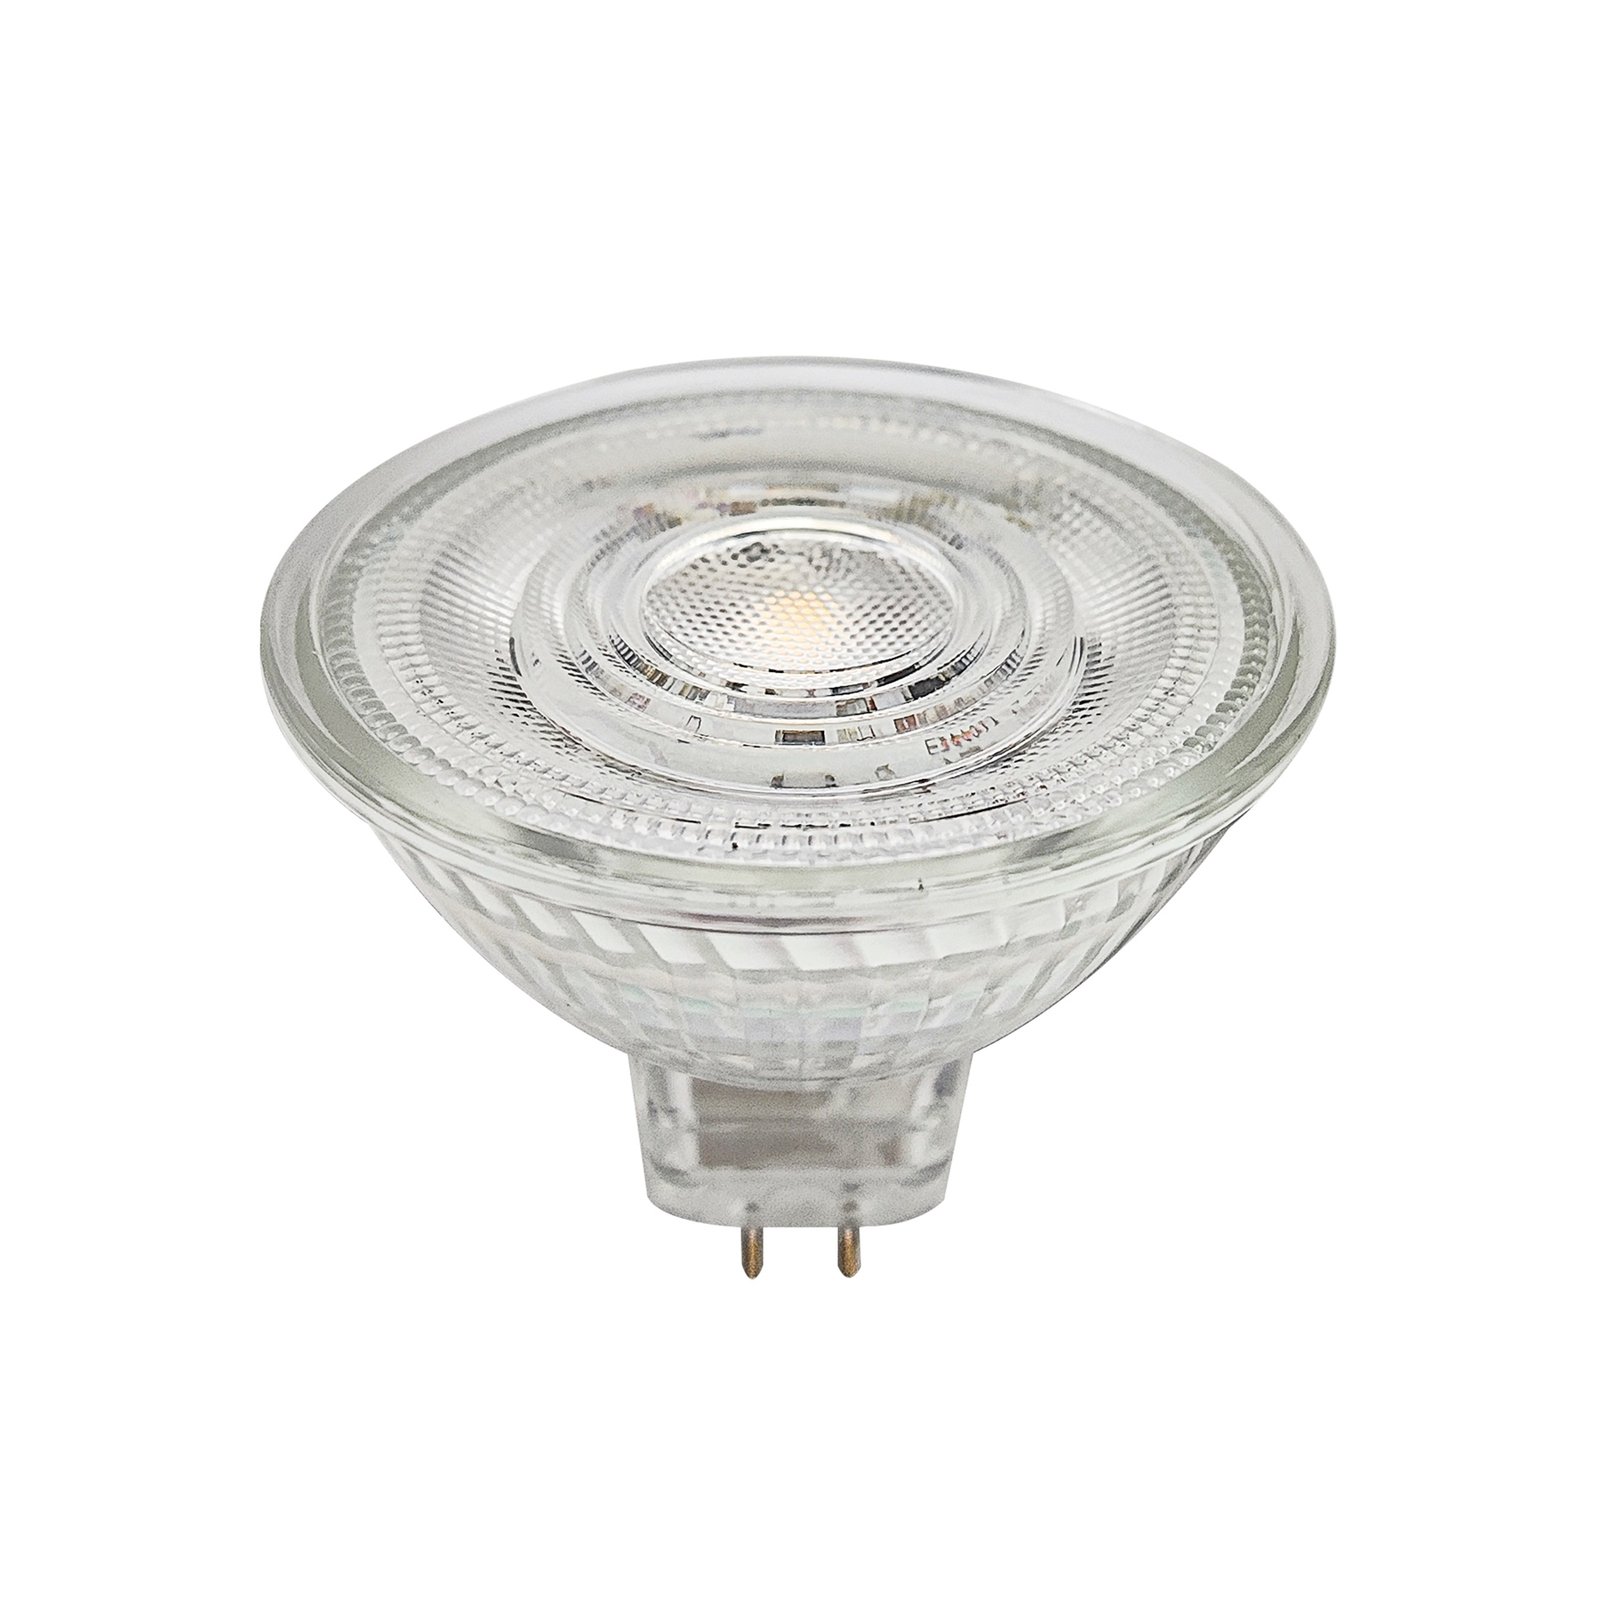 Prios GU5.3 LED bulb 4.9W 500lm 36° clear 840 set of 10